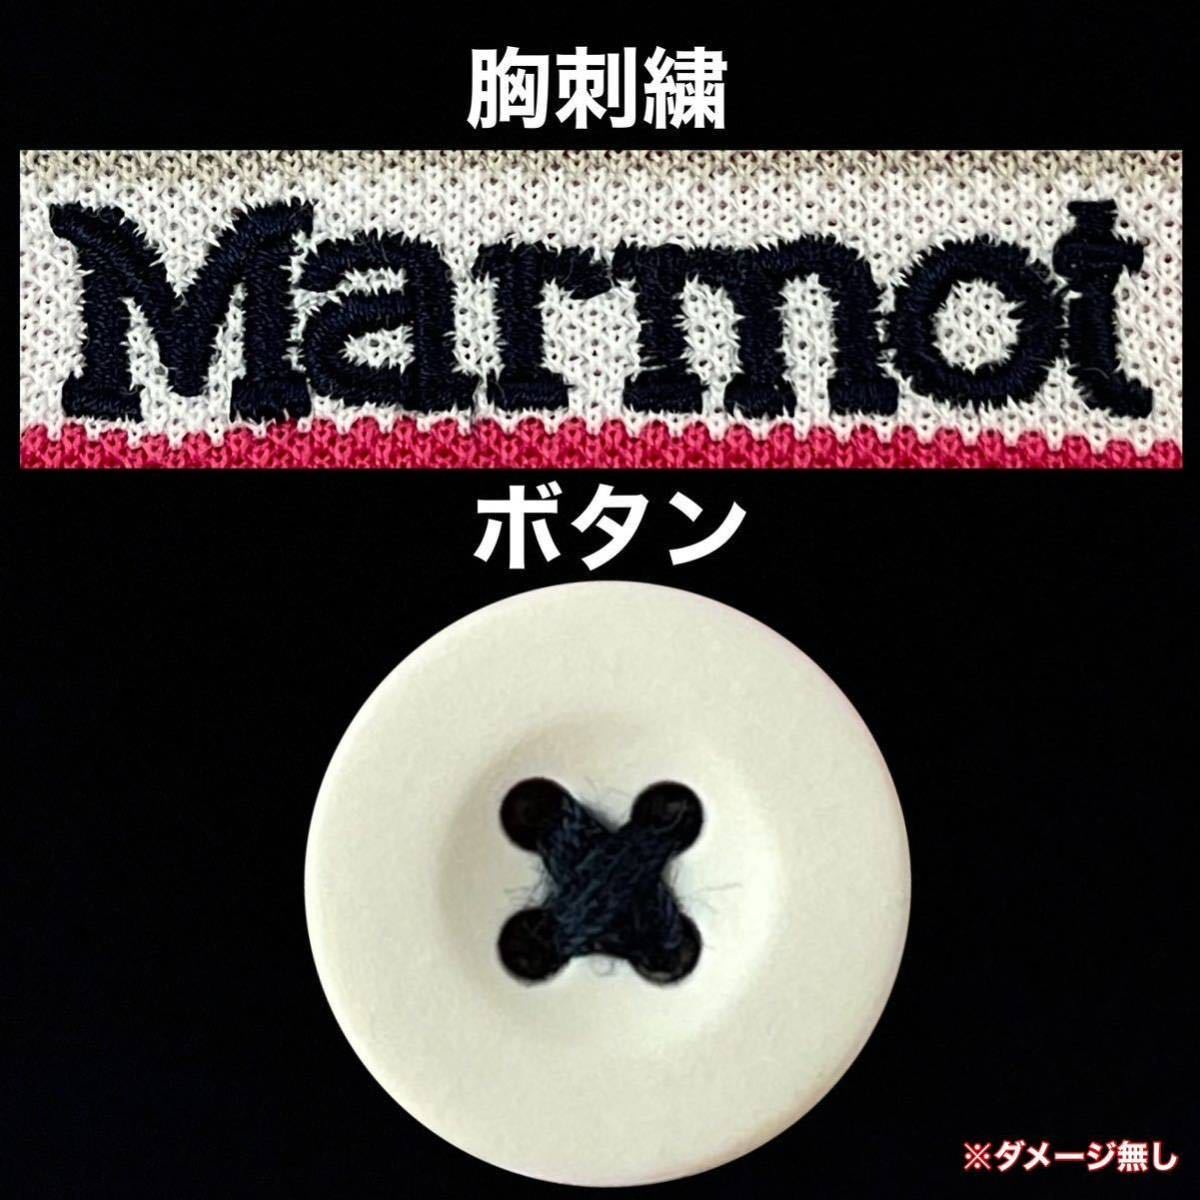 超美品 Marmot(マーモット)レディース ポロ シャツ L(T165.B85cm)半袖 使用2回 ピンク ホワイト ドライ アウトドア スポーツ (株)デサント